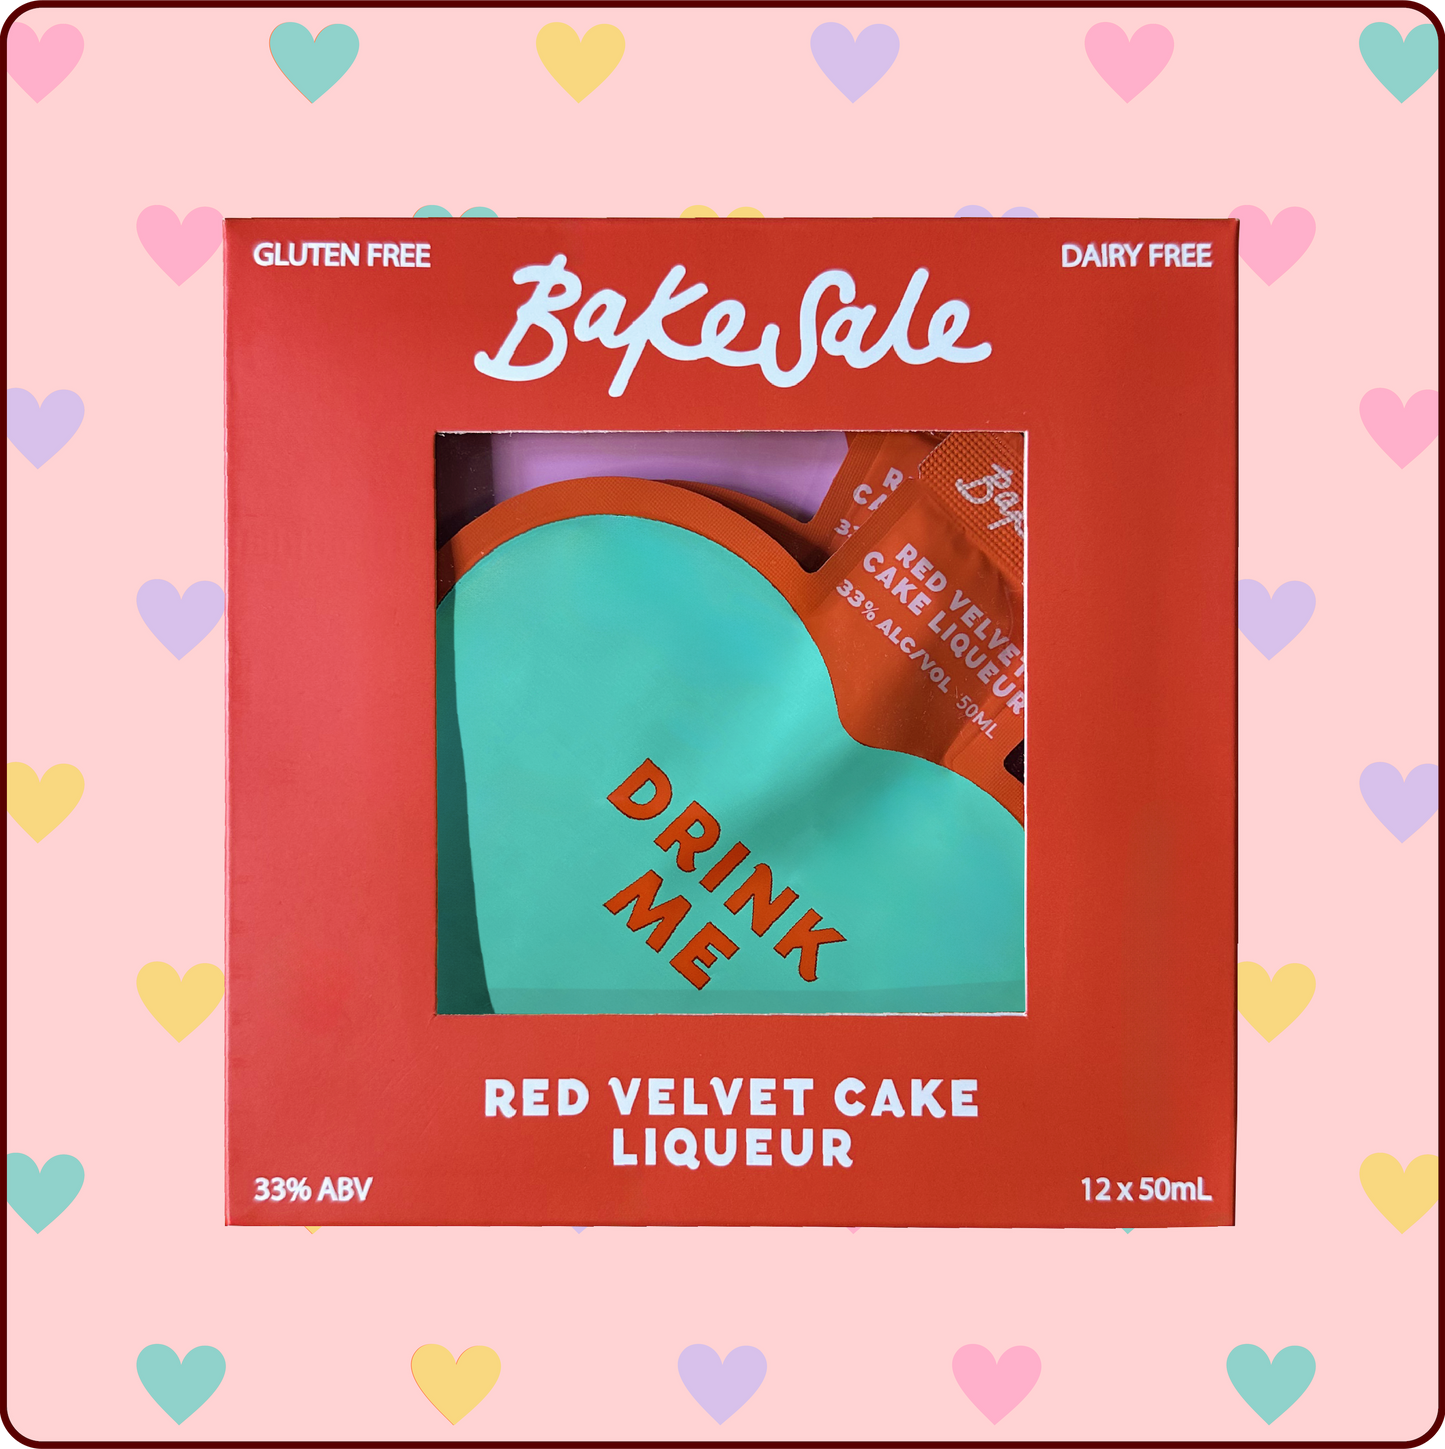 Bakesale Red Velvet Cake